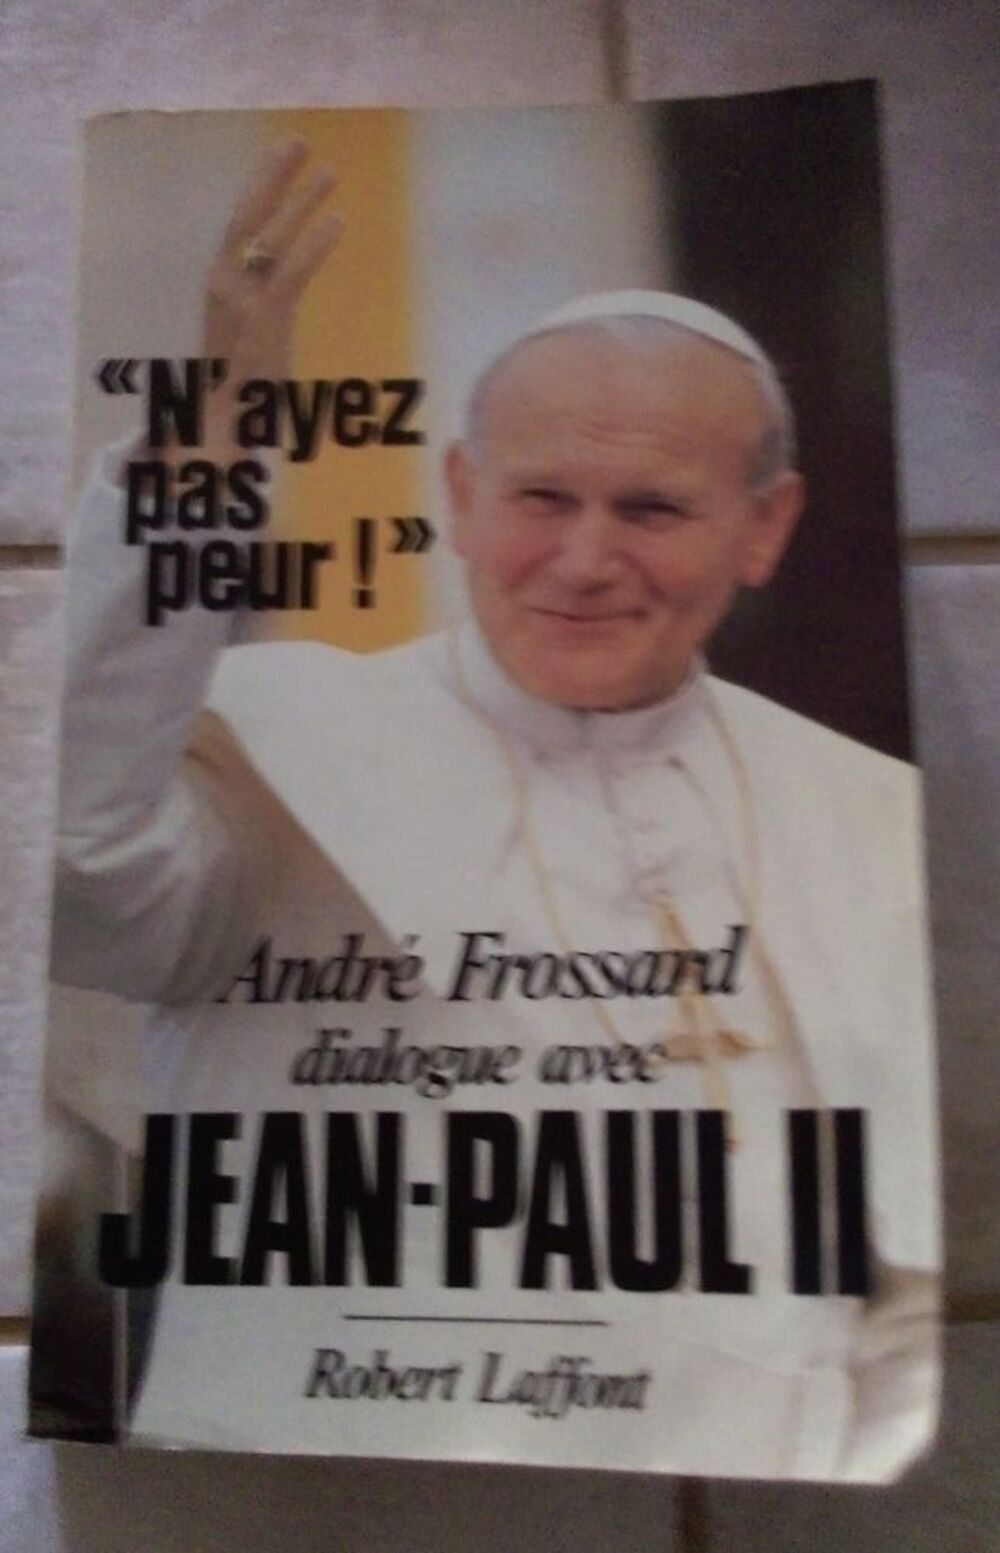 N'ayez pas peur - Andr&eacute; Frossard dialogue avec Jean-Paul II Livres et BD